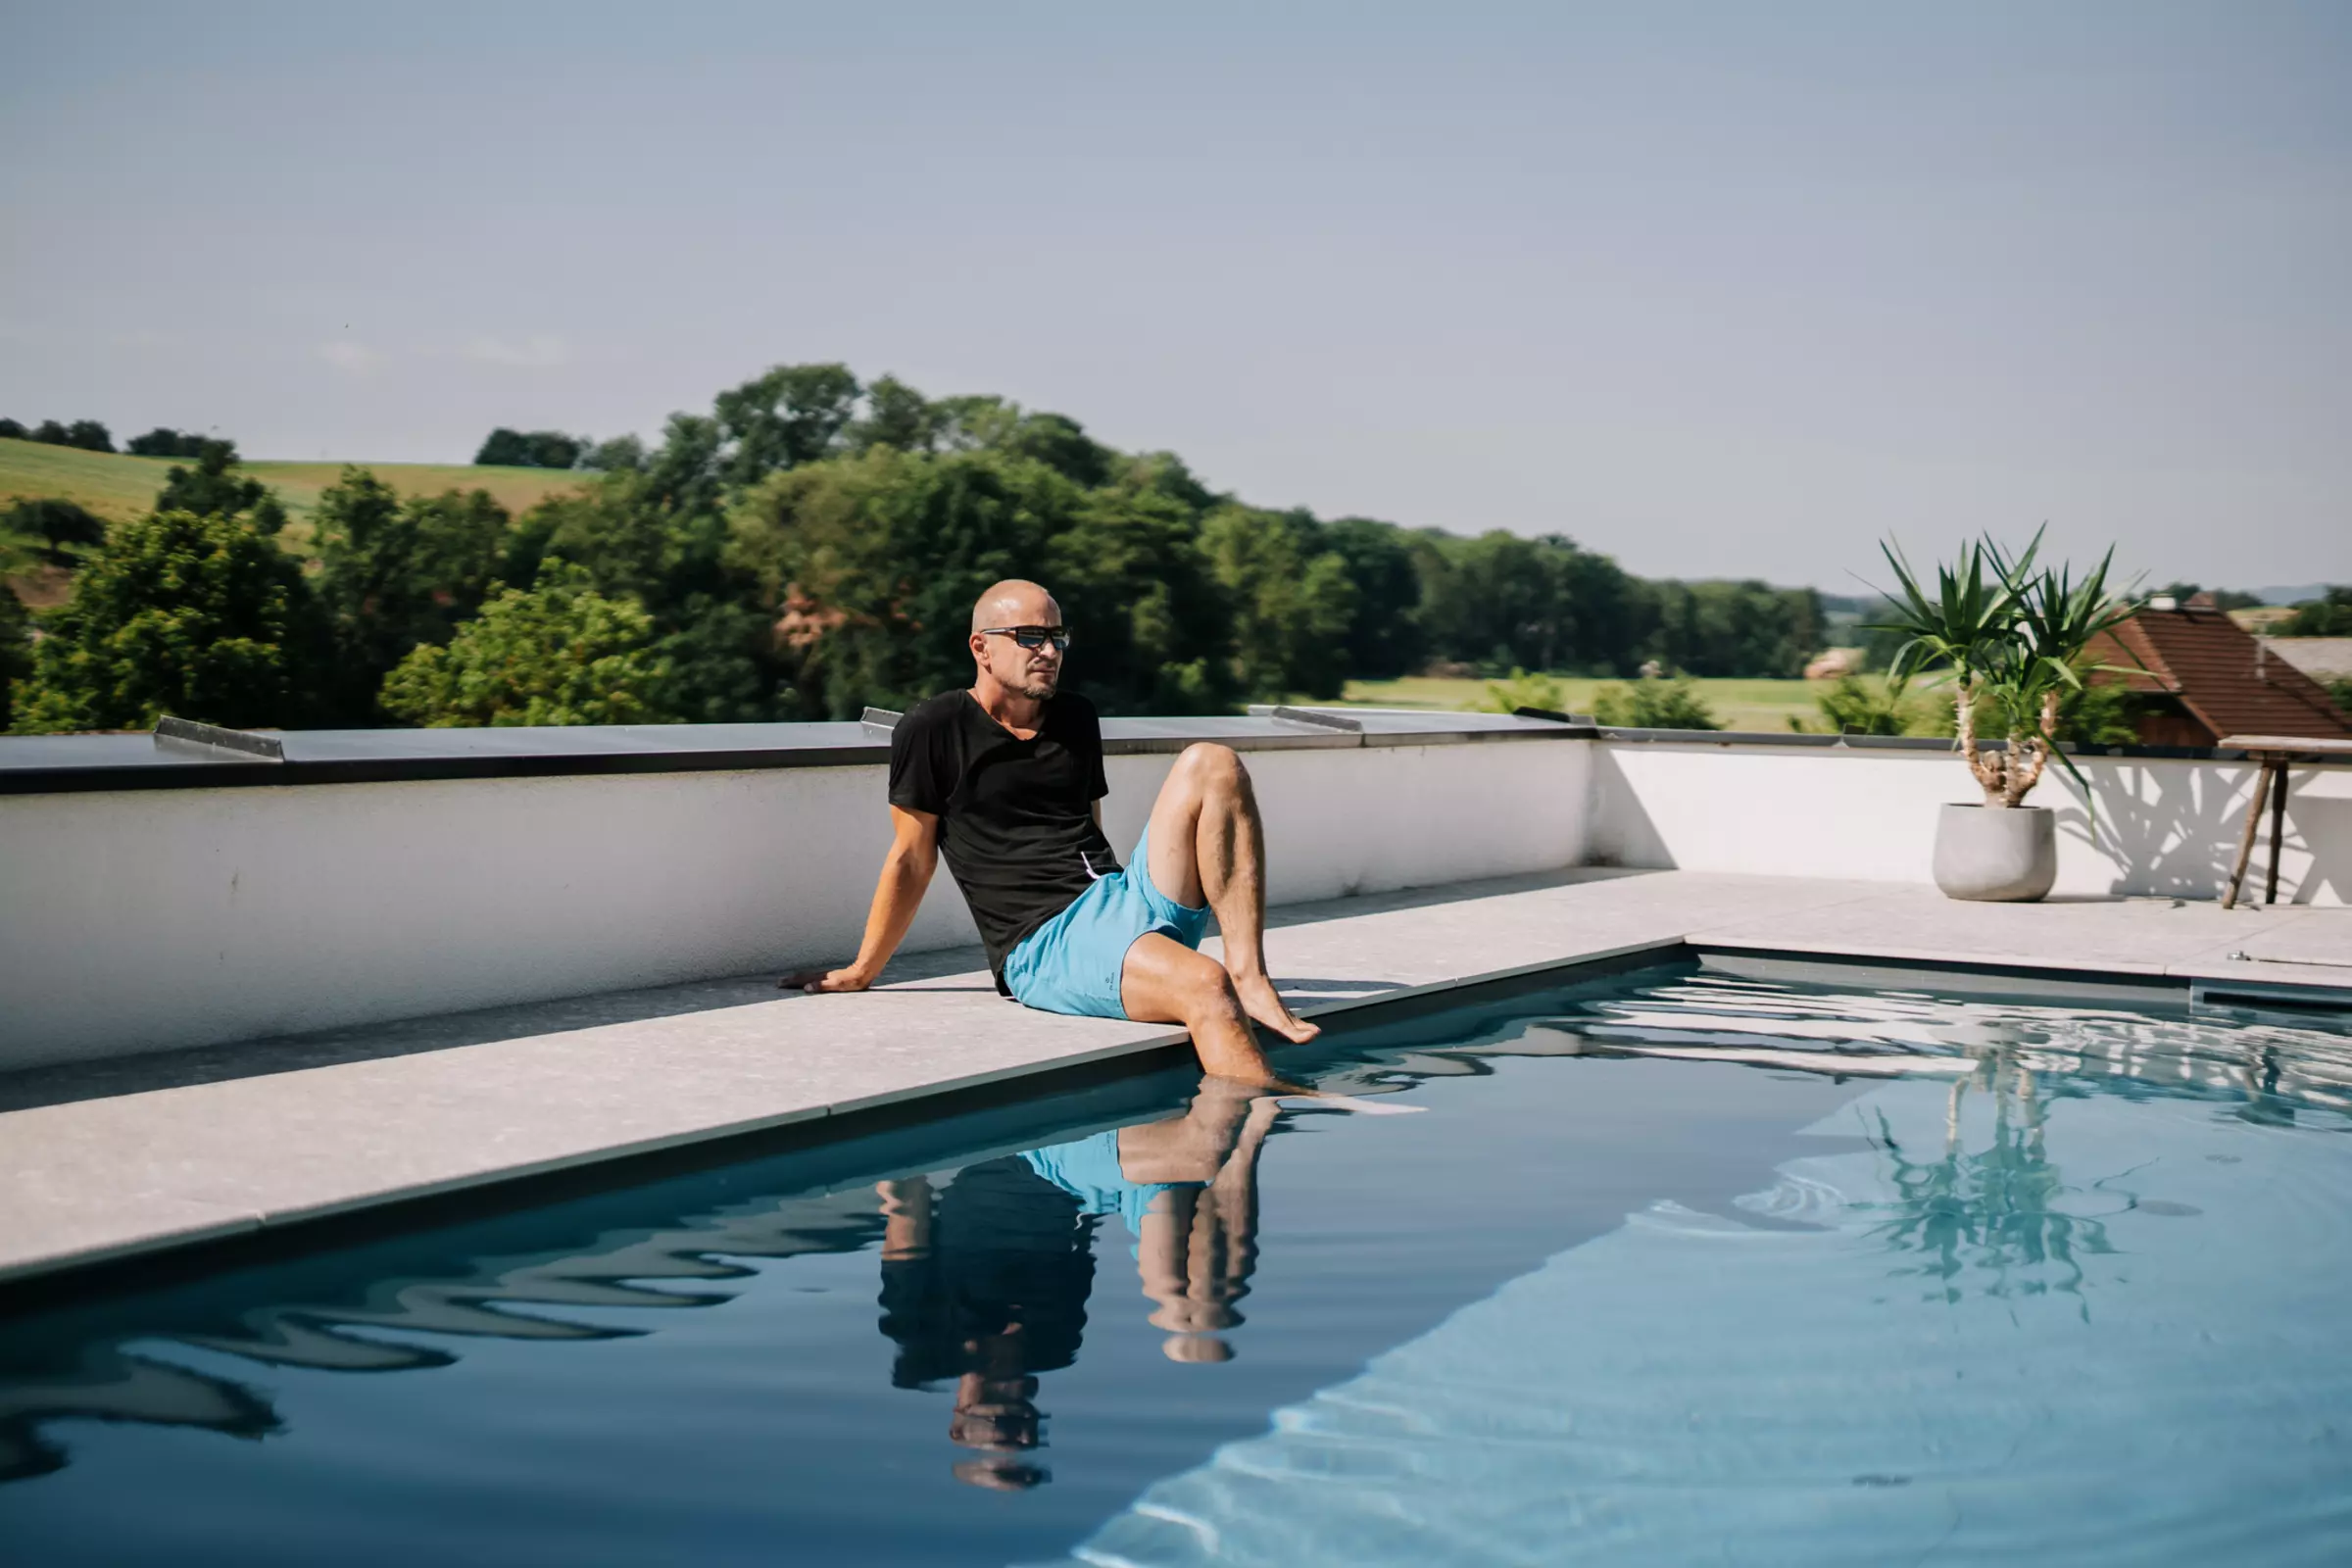 Mann sitzt am Poolrand, ein Bein im Wasser